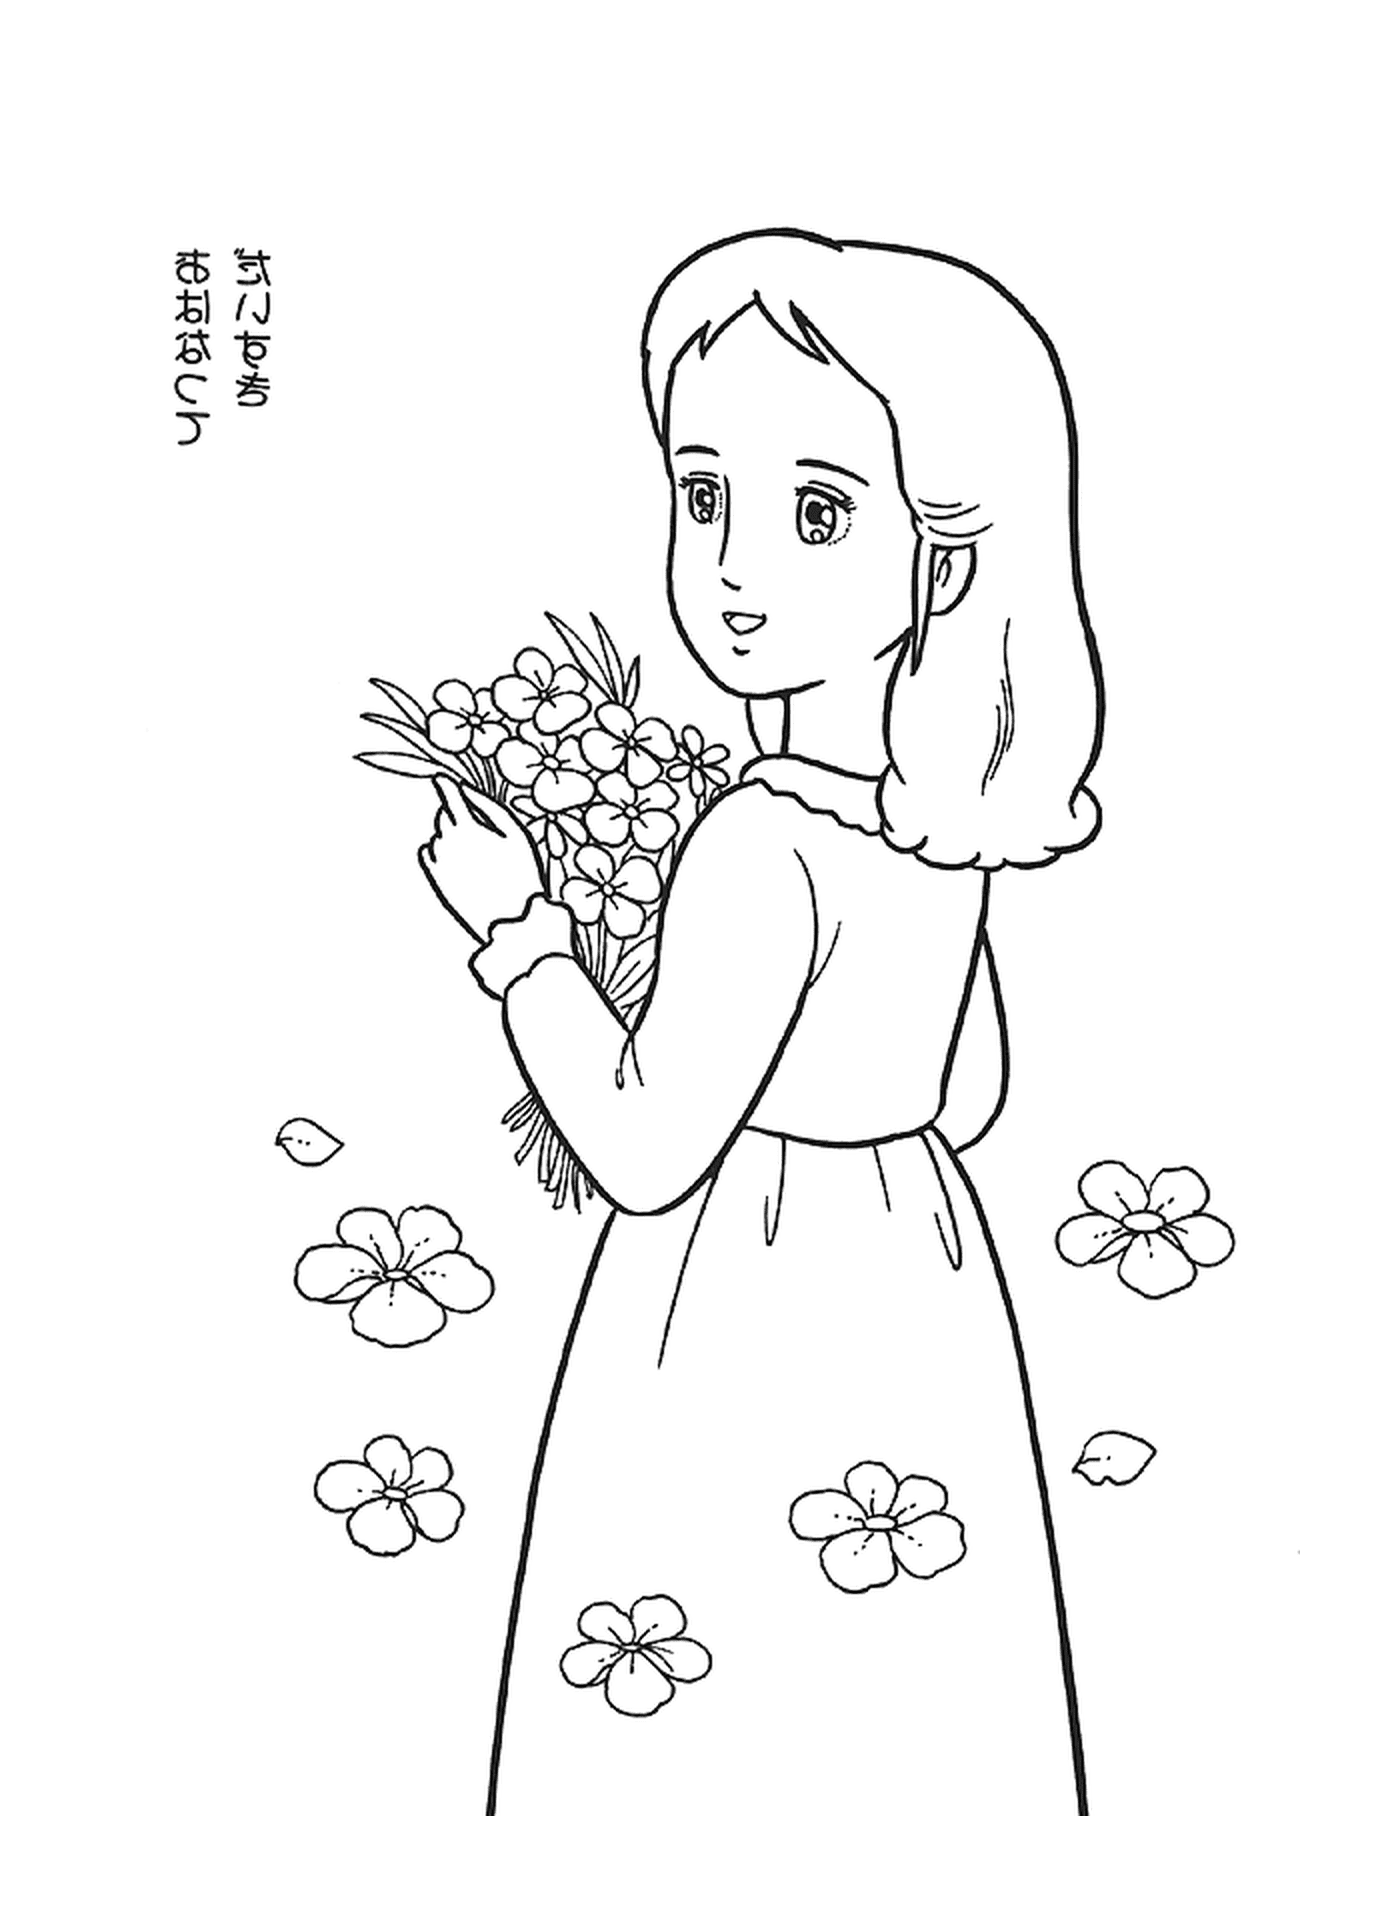  Mujer sosteniendo ramo de flores manos 